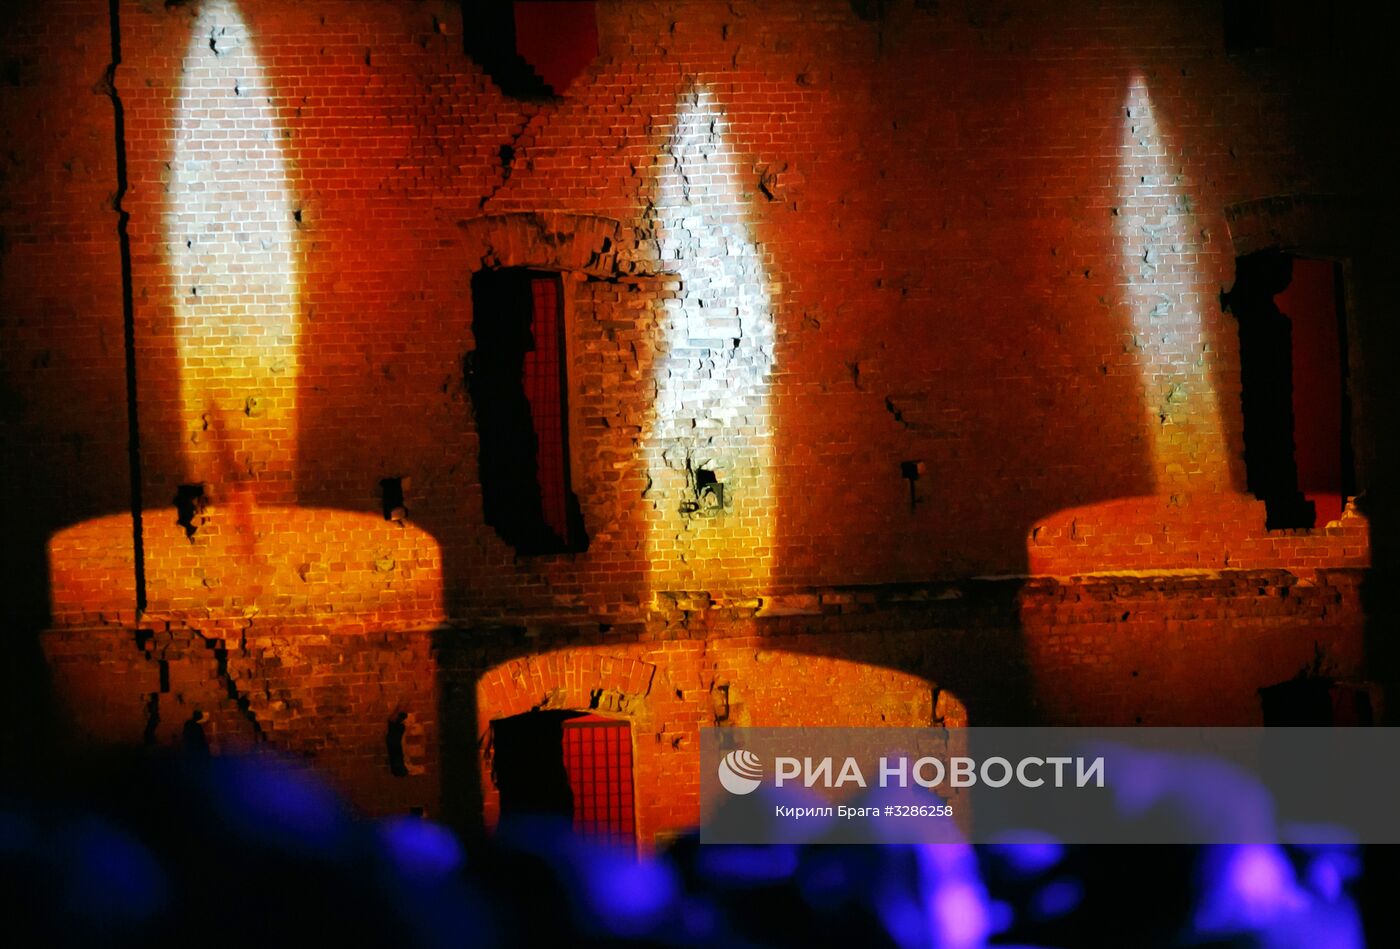 Парад, посвящённый 75-й годовщине победы в Сталинградской битве